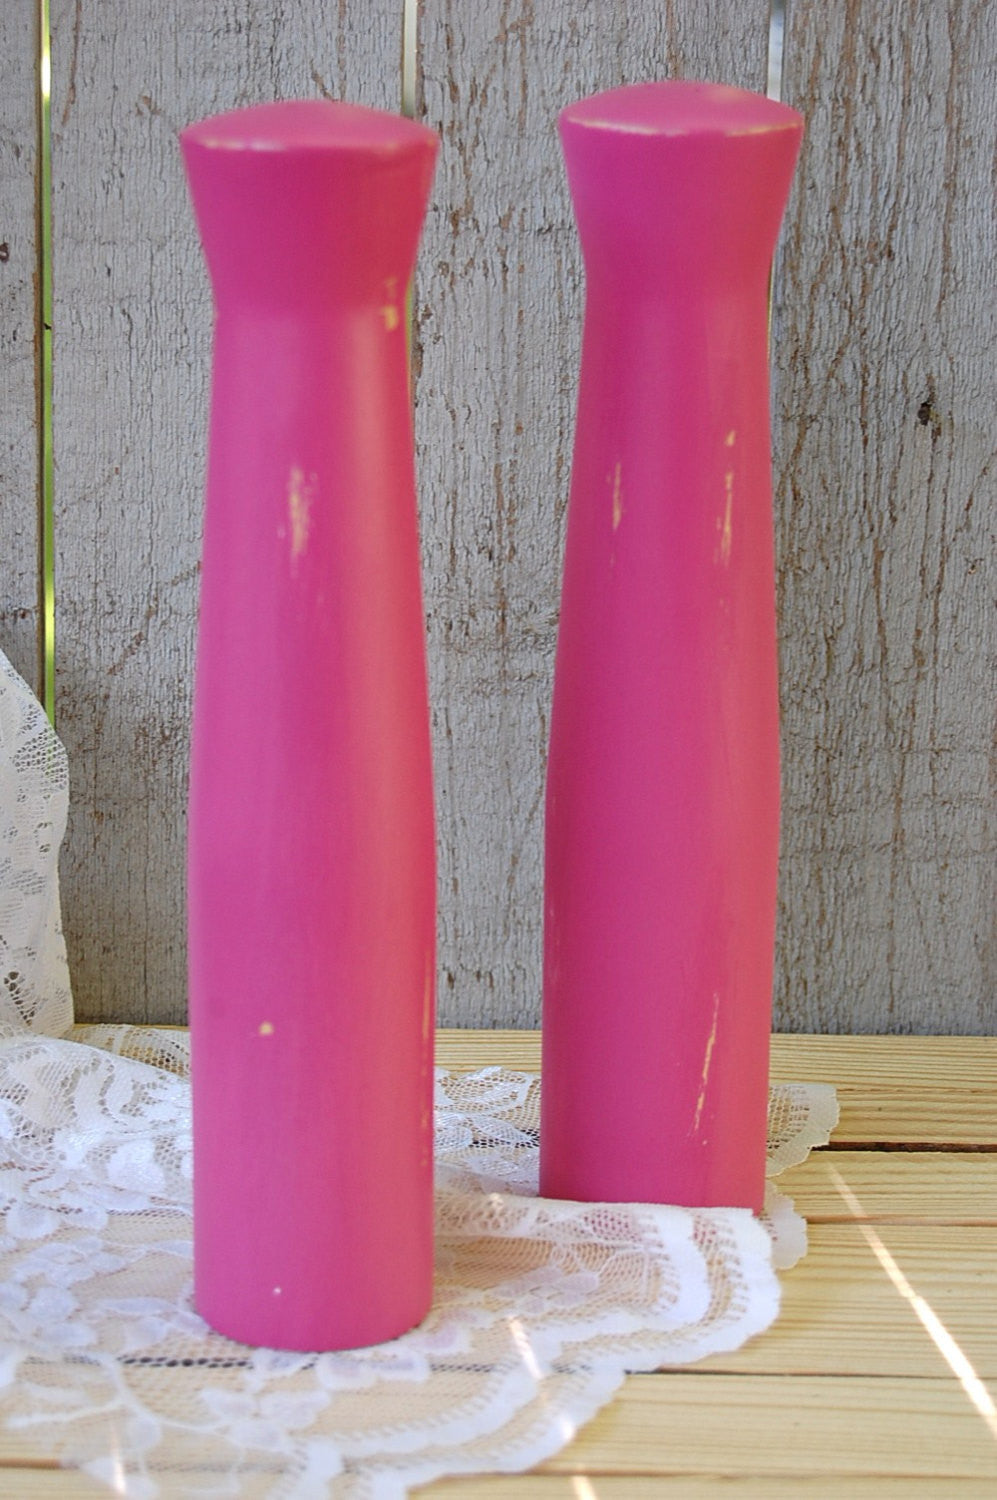 Hot pink salt and pepper shaker set - The Vintage Artistry